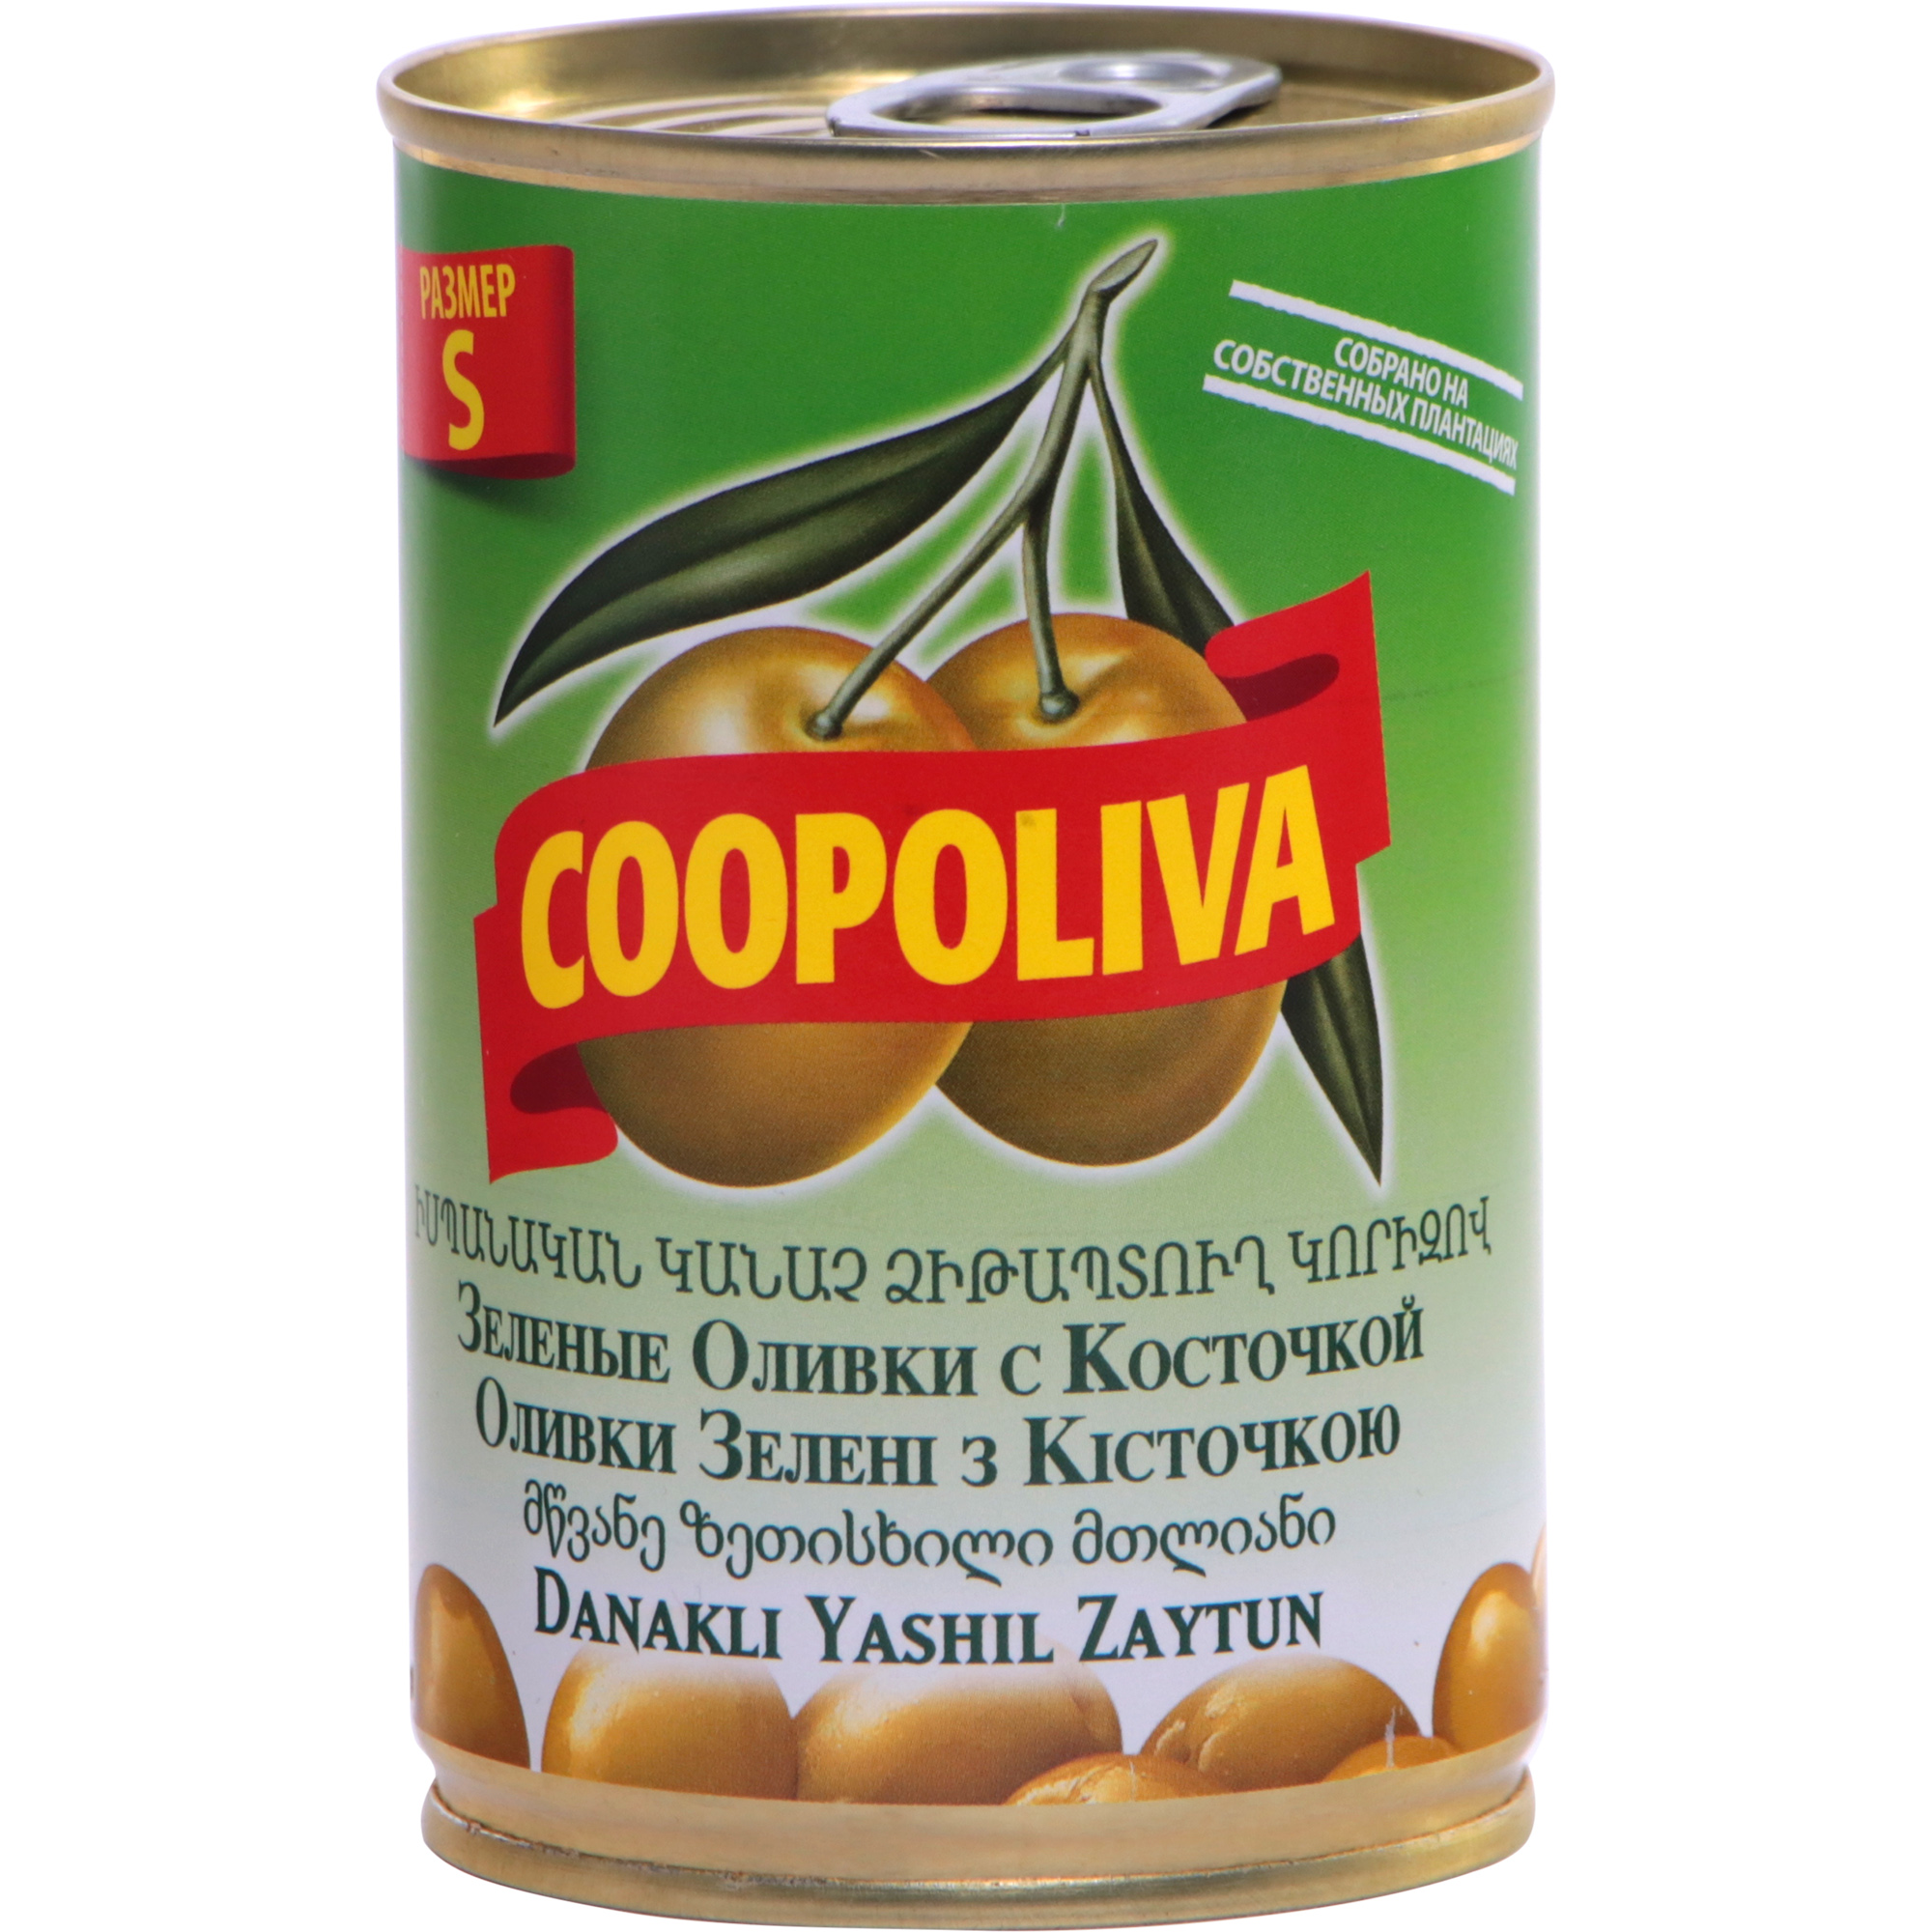 Оливки COOPOLIVA S с косточкой, 300 г оливки coopoliva с косточкой 350 г